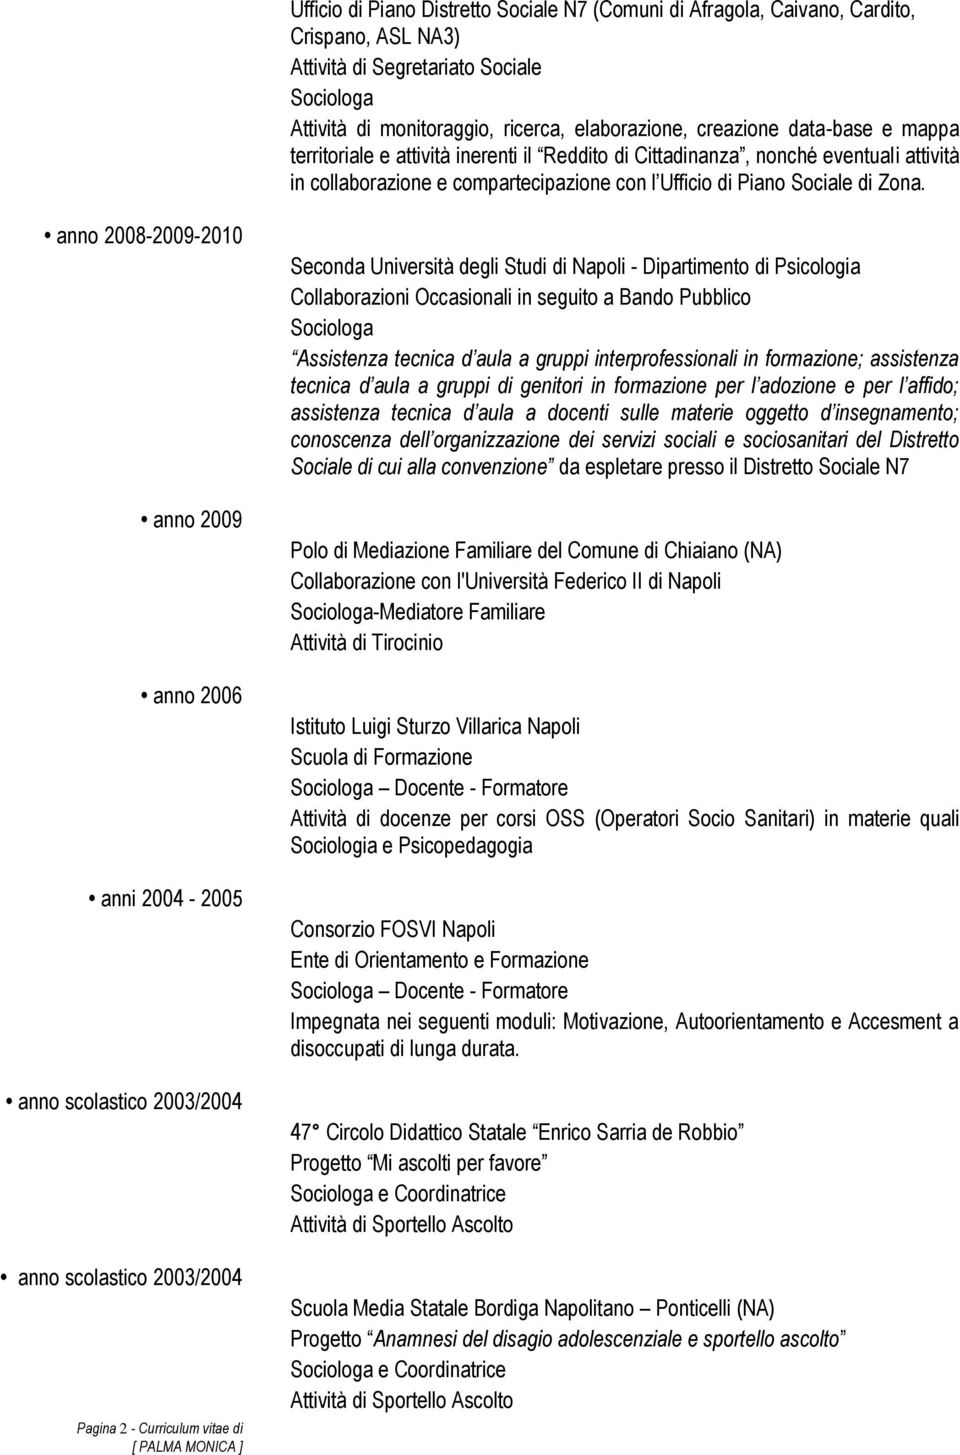 anno 2008-2009-2010 anno 2009 anno 2006 anni 2004-2005 anno scolastico 2003/2004 anno scolastico 2003/2004 Pagina 2 - Curriculum vitae di Seconda Università degli Studi di Napoli - Dipartimento di